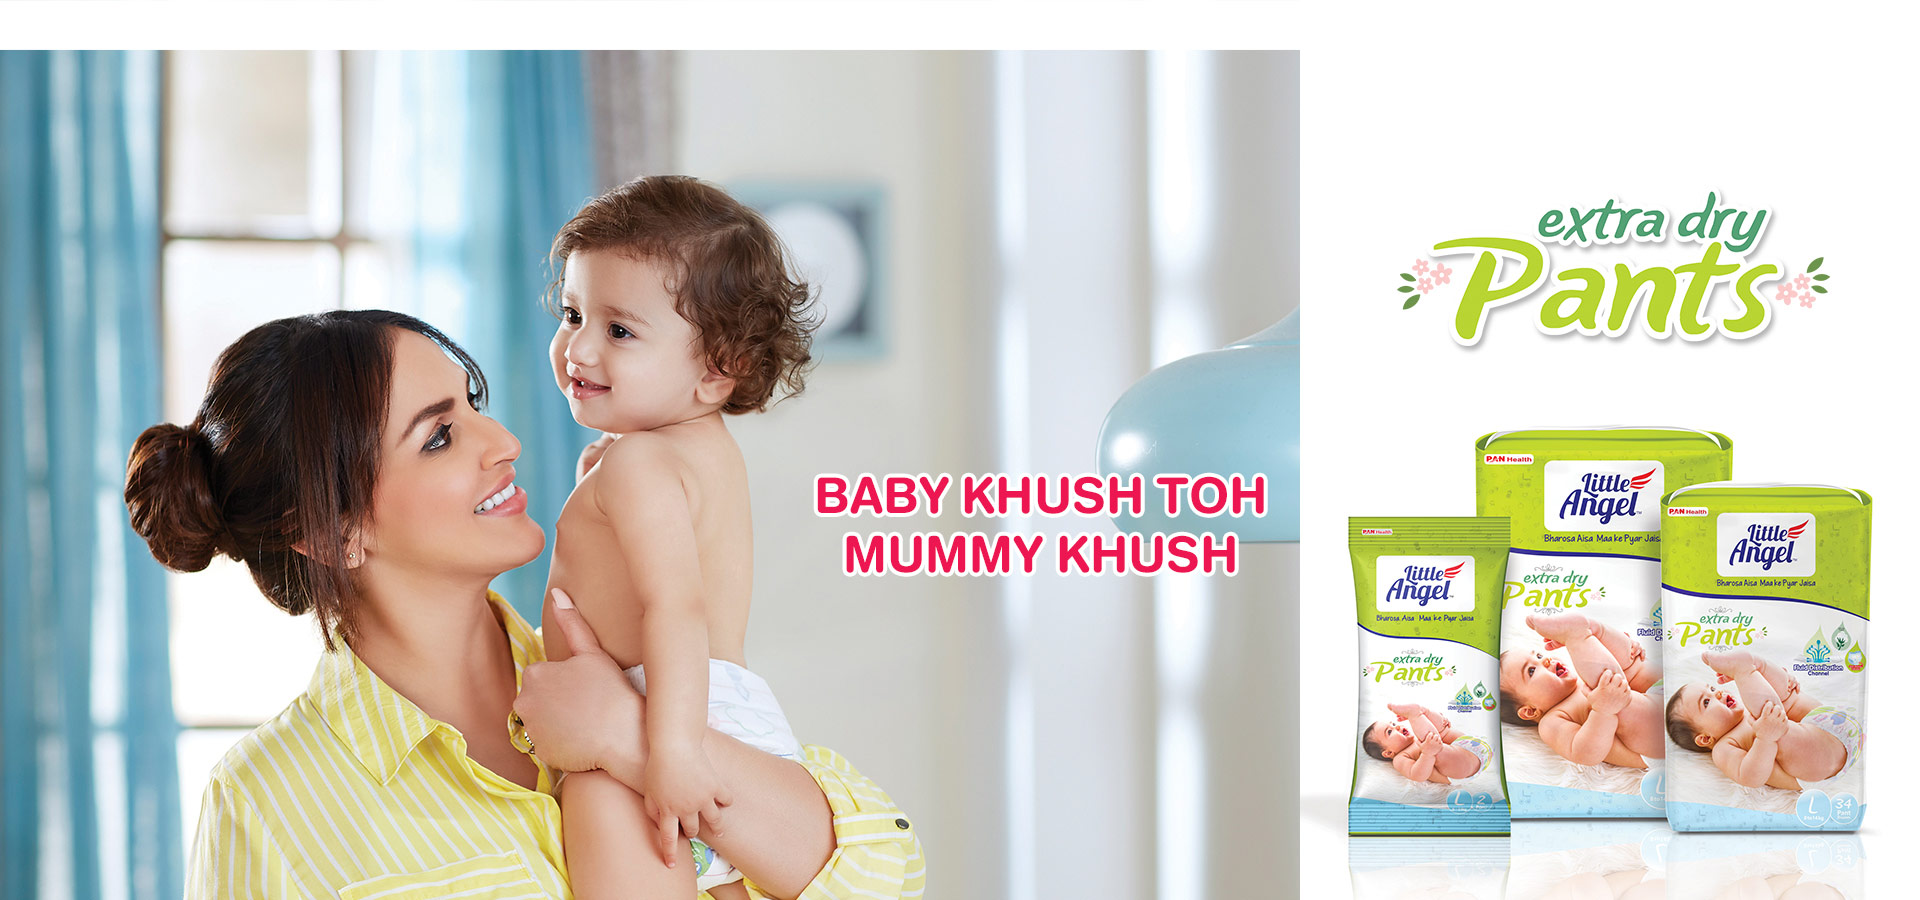 Baby Khush Toh Mummy Khush Isha, Baby Khush Toh Mummy Khush | Baby Diapers from Little Angel